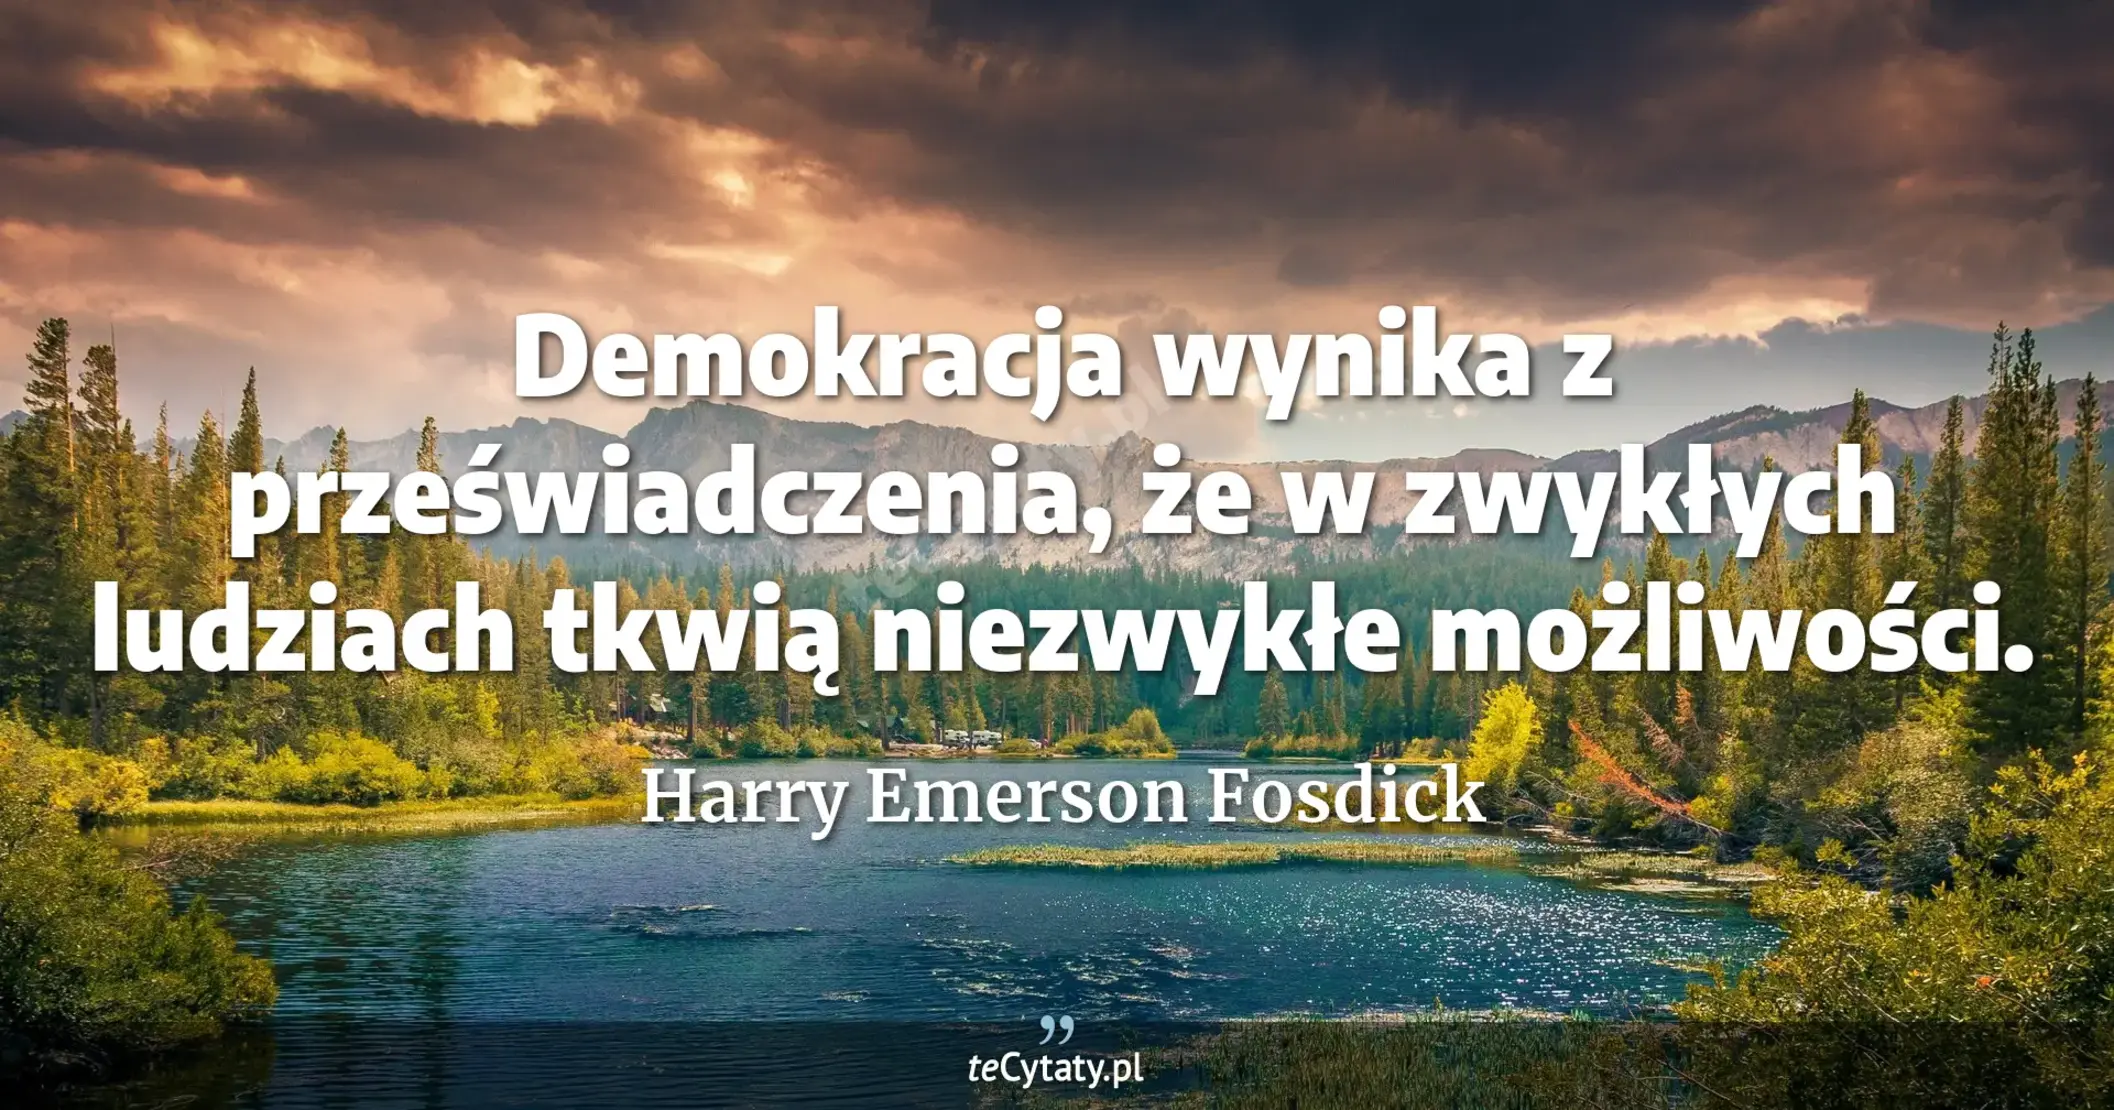 Demokracja wynika z przeświadczenia, że w zwykłych ludziach tkwią niezwykłe możliwości. - Harry Emerson Fosdick